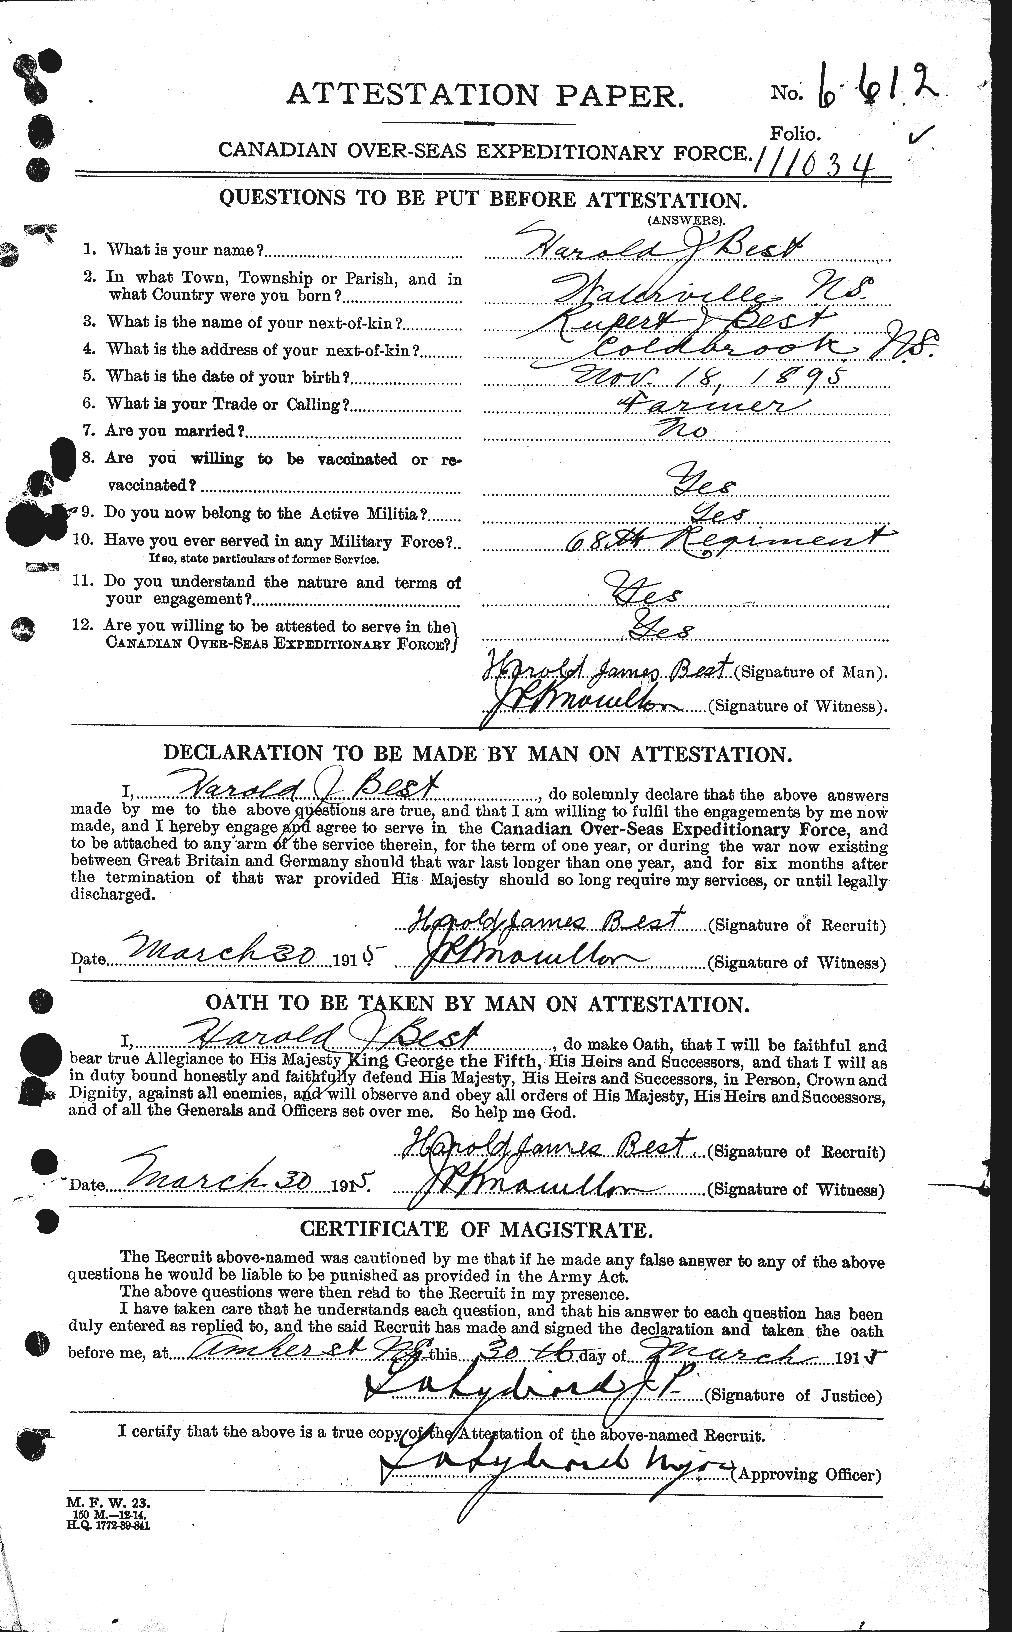 Dossiers du Personnel de la Première Guerre mondiale - CEC 240265a